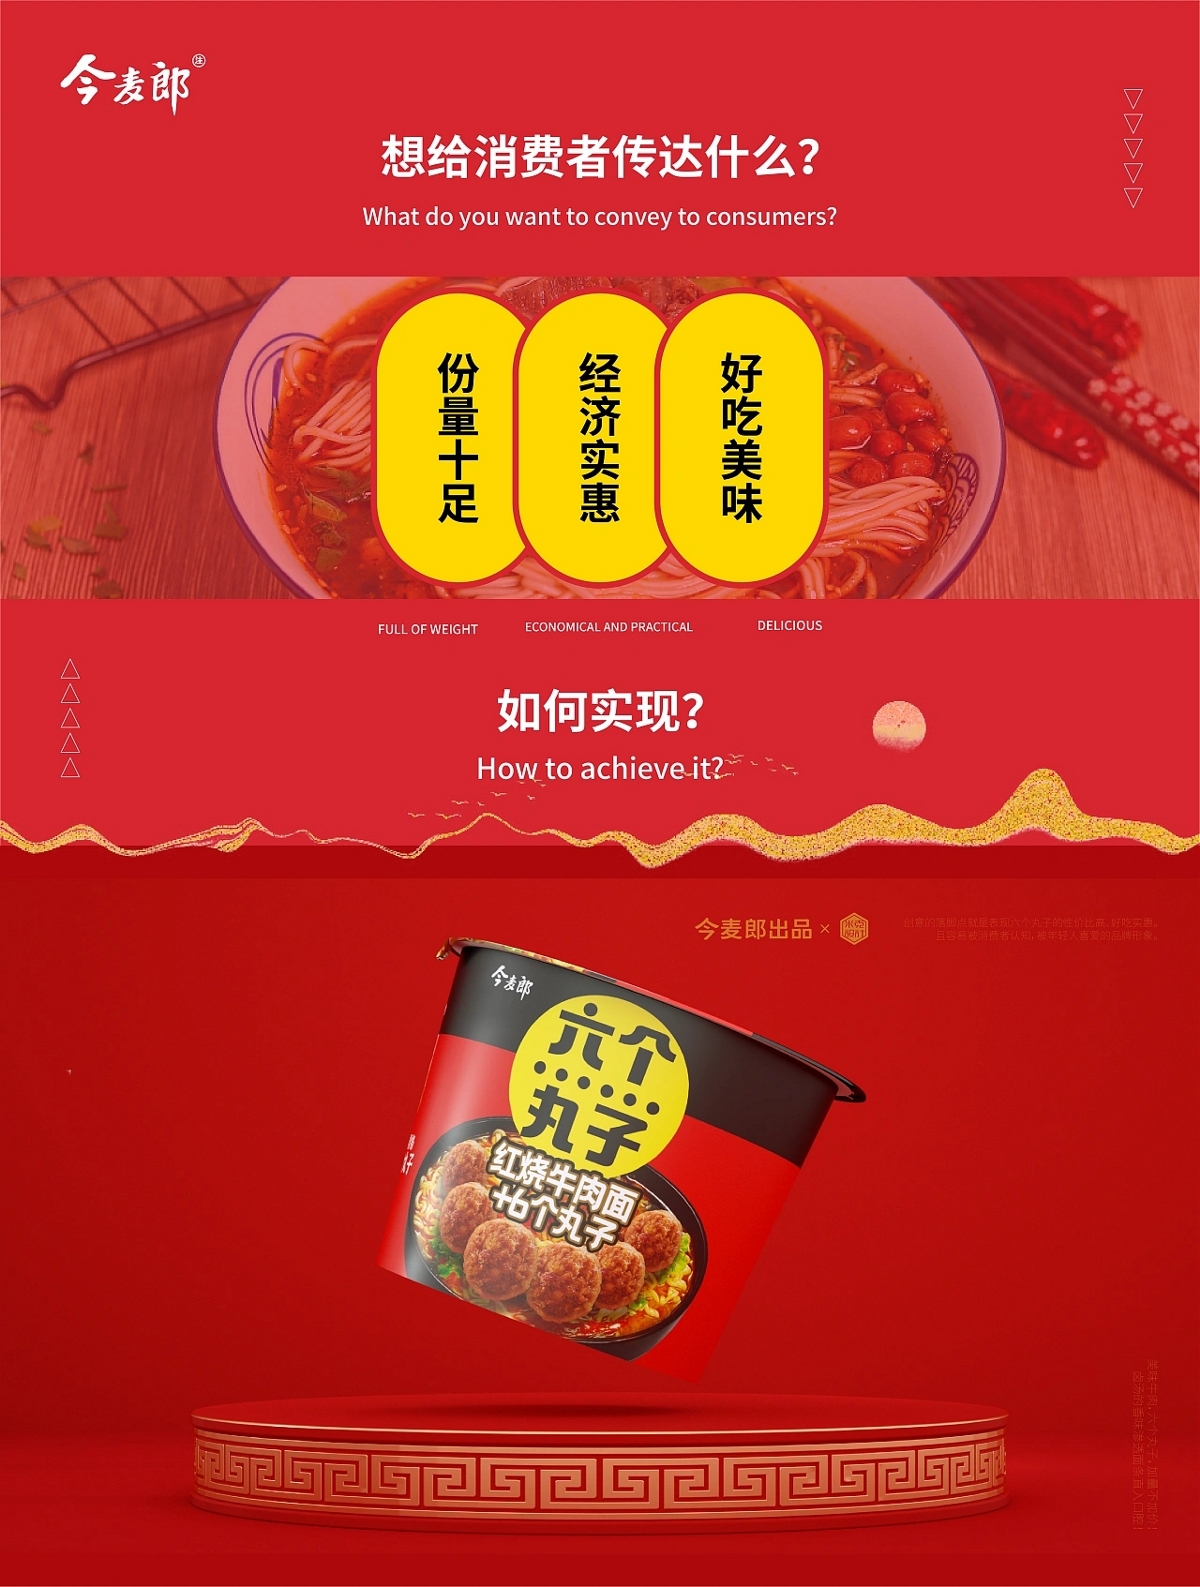 今麦郎弹面CNY完整版-广告:餐饮食品视频-新片场